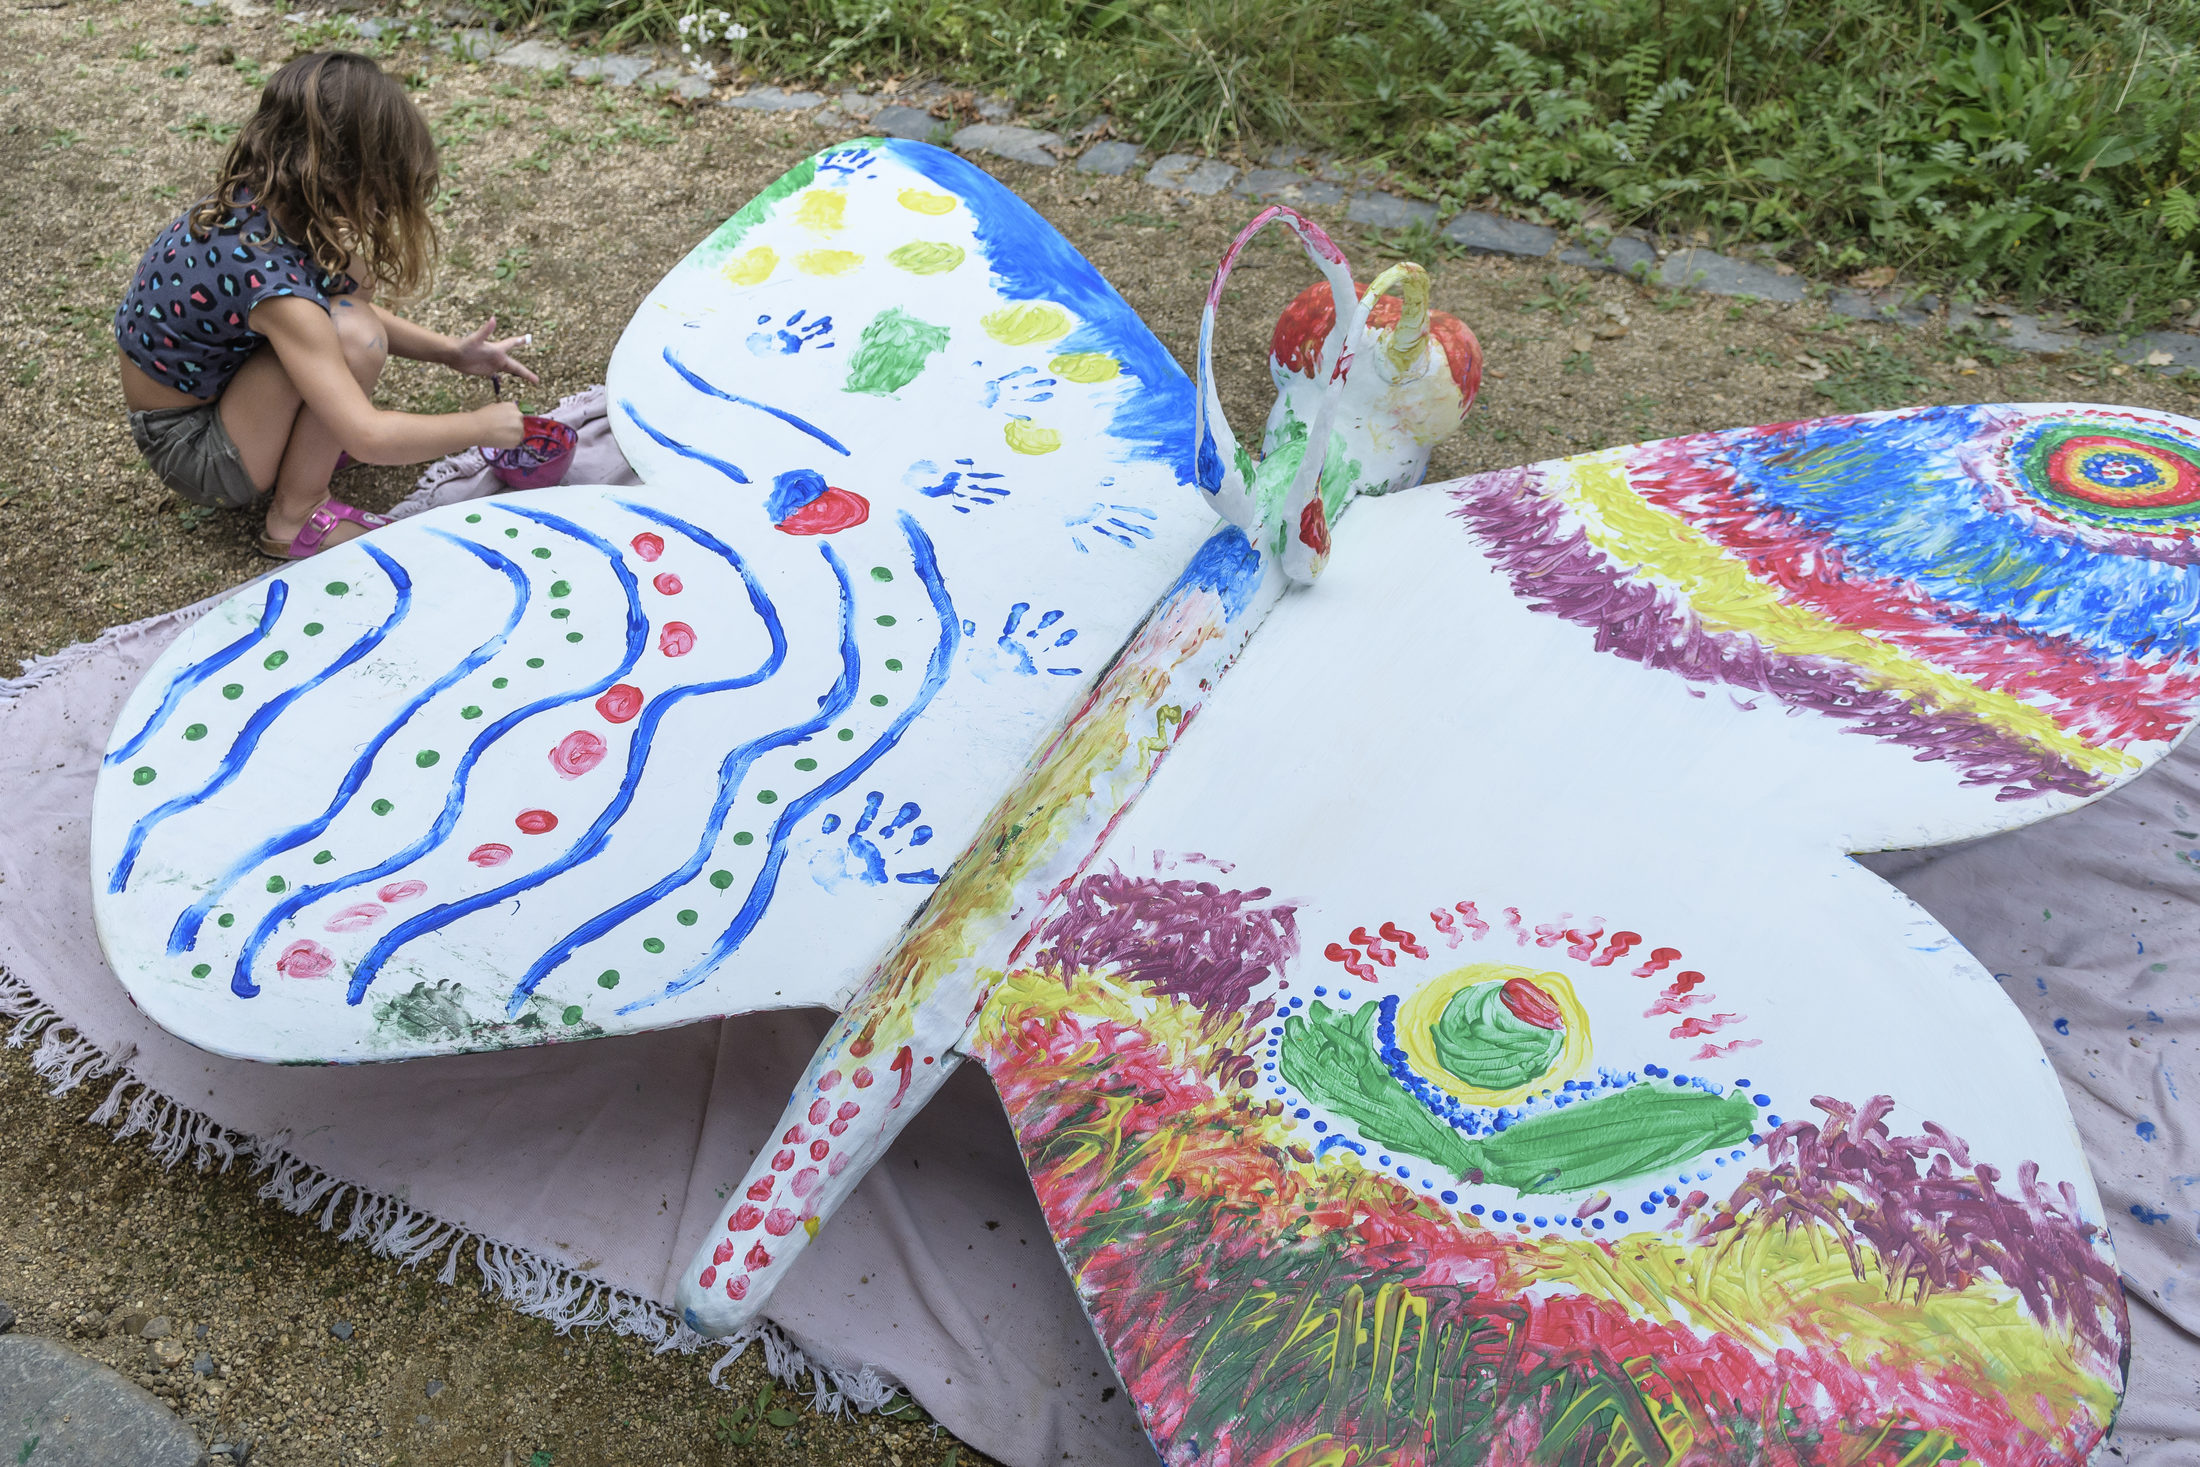 Kinder bemalen einen großen Schmetterling aus Pappe mit bunten Farben. (Wird bei Klick vergrößert)